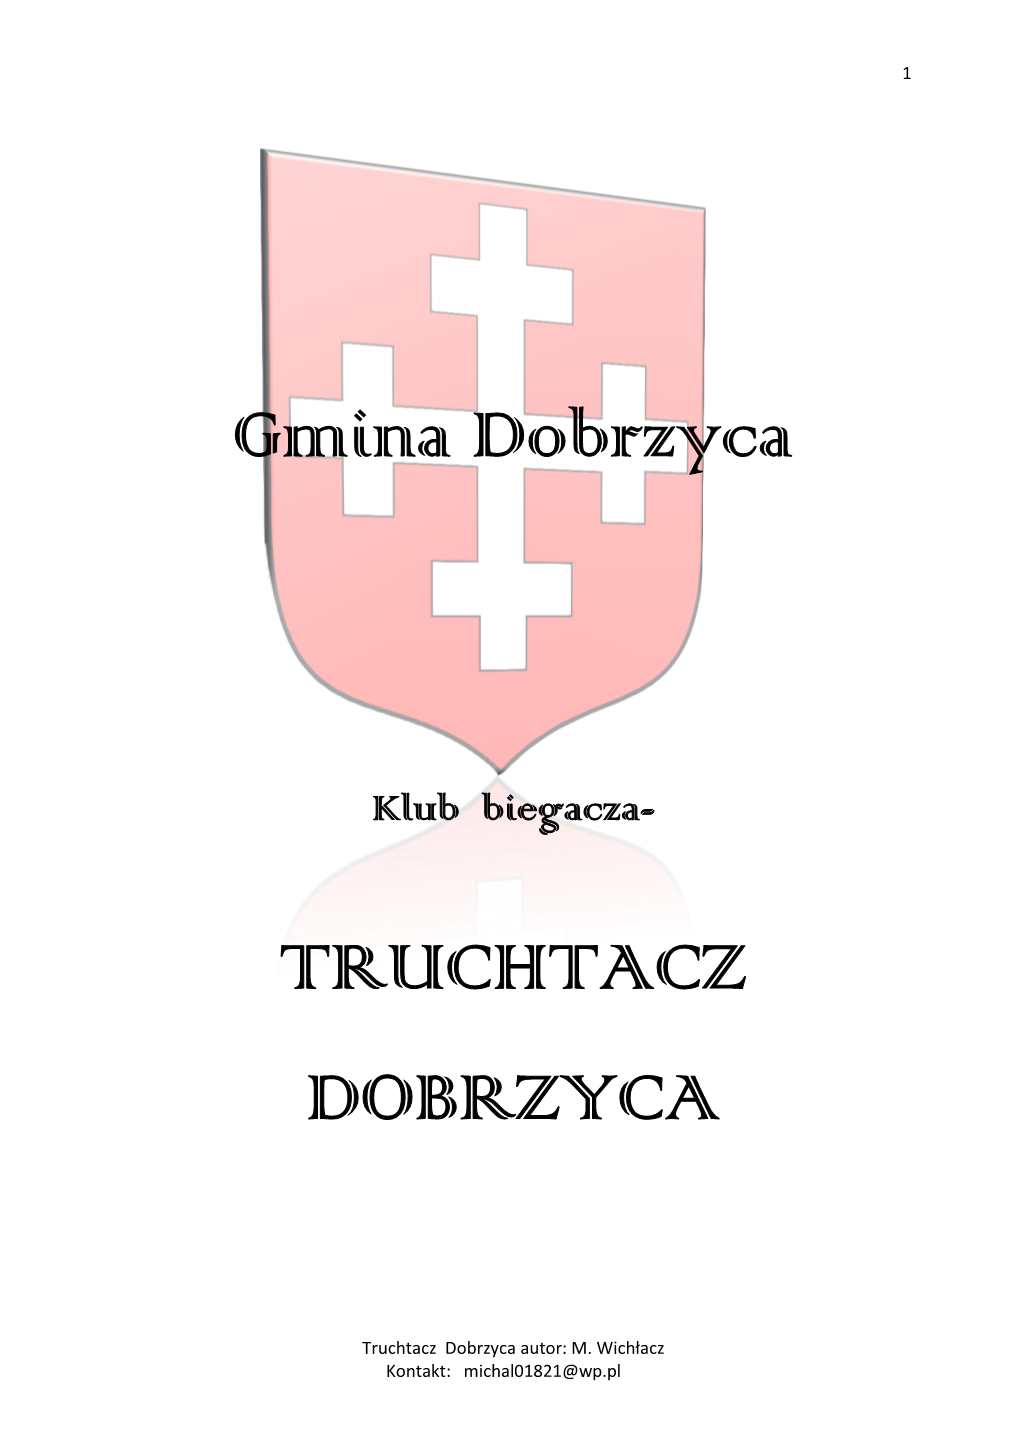 Gmina Dobrzyca TRUCHTACZ DOBRZYCA